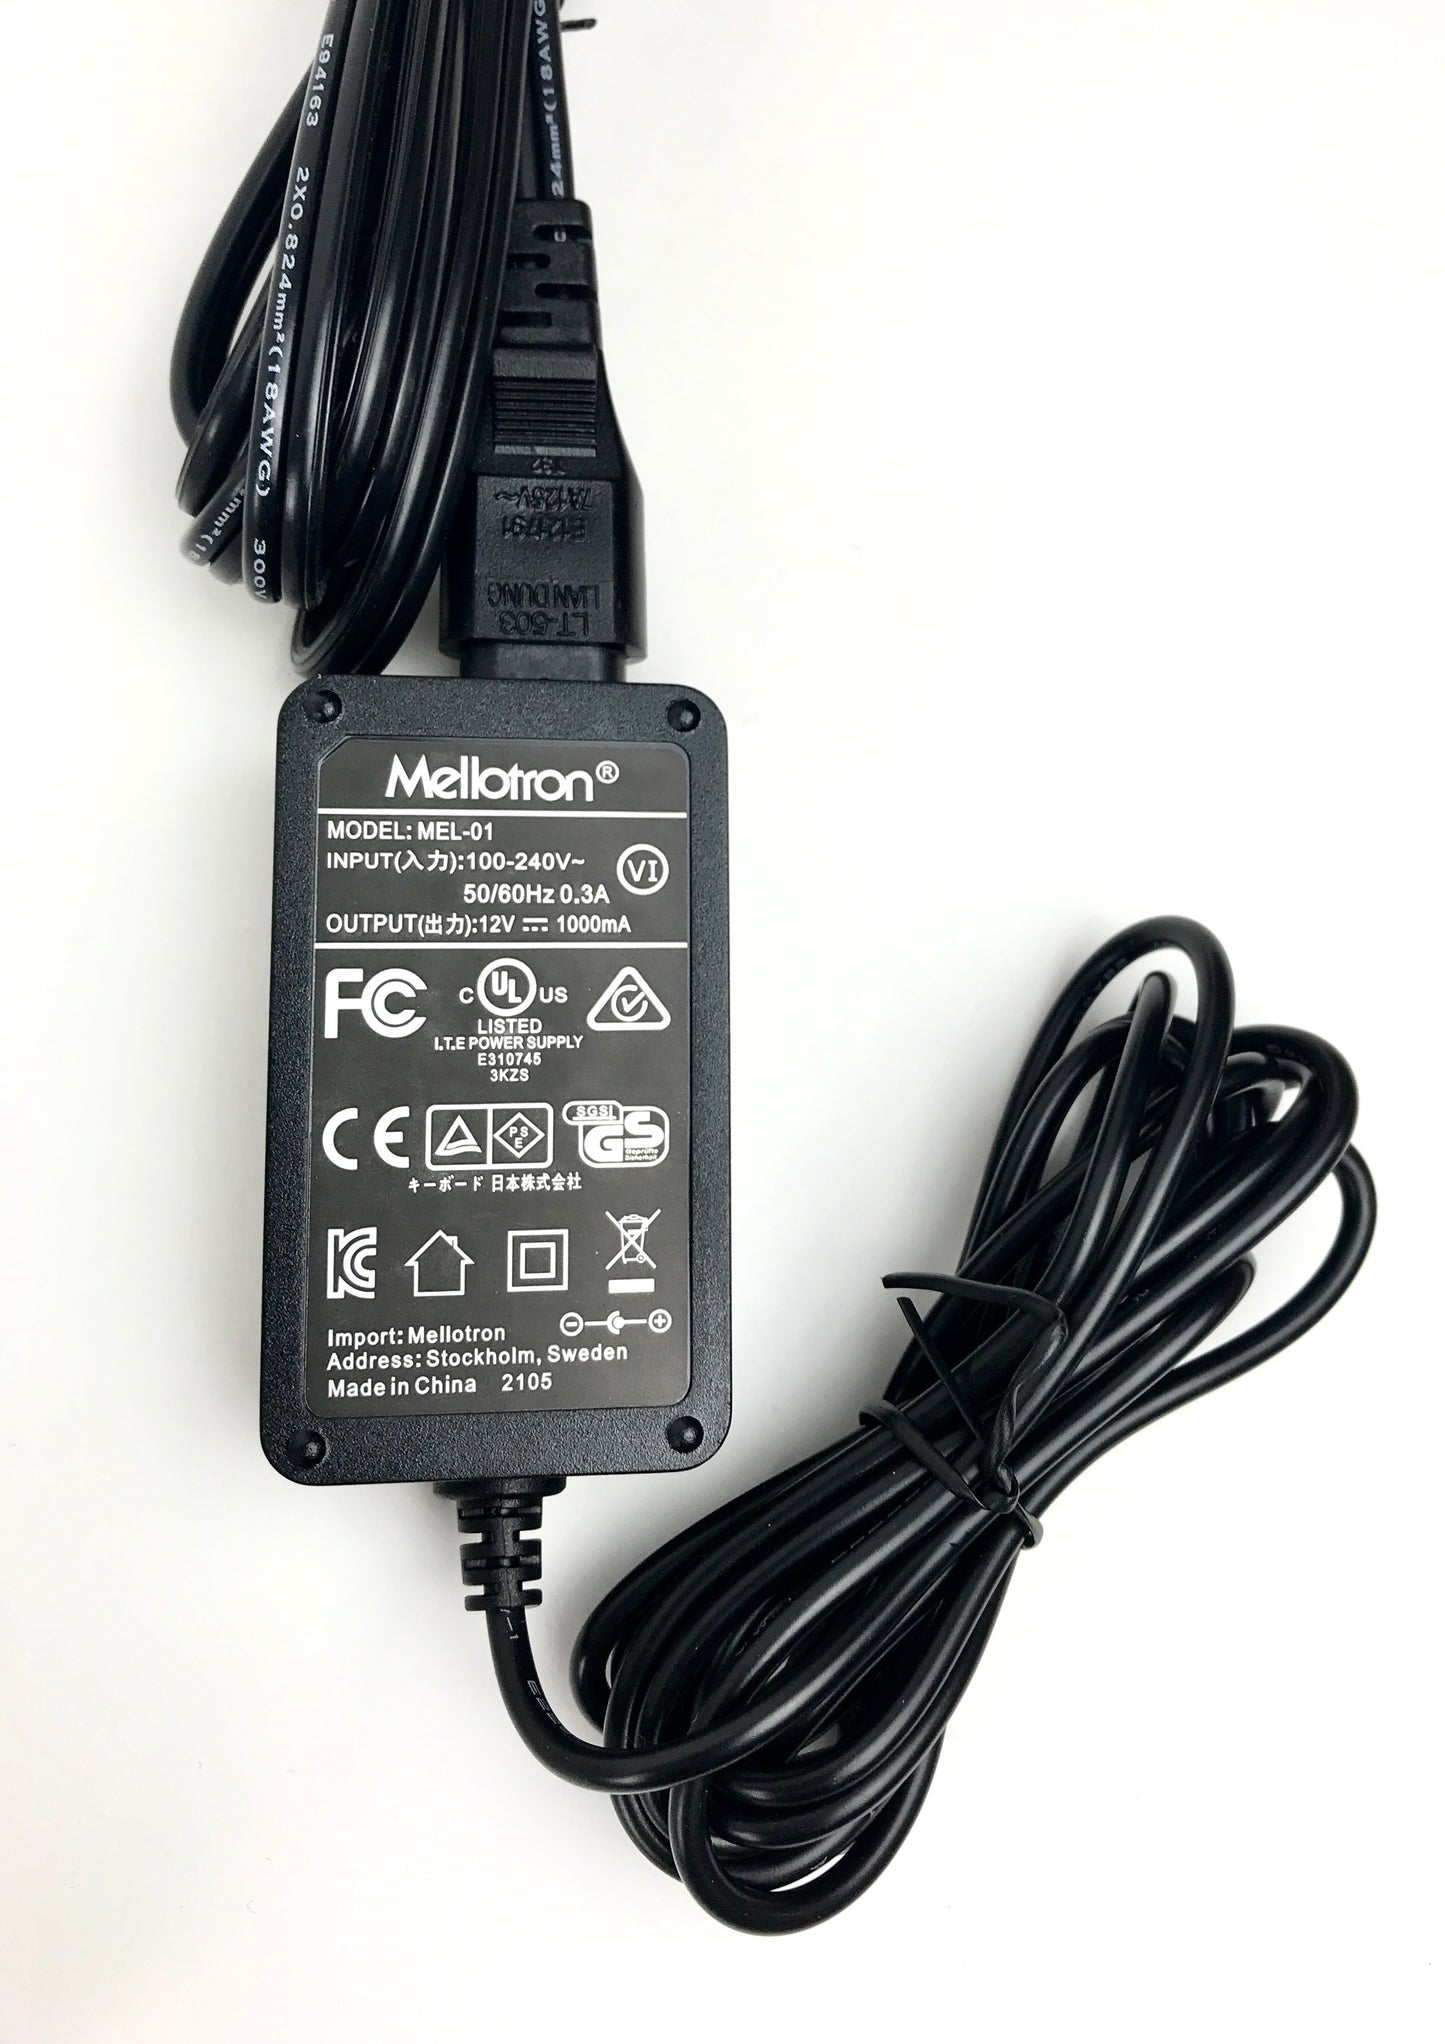 MINI M4000D Digital Mellotron in excellent condition!